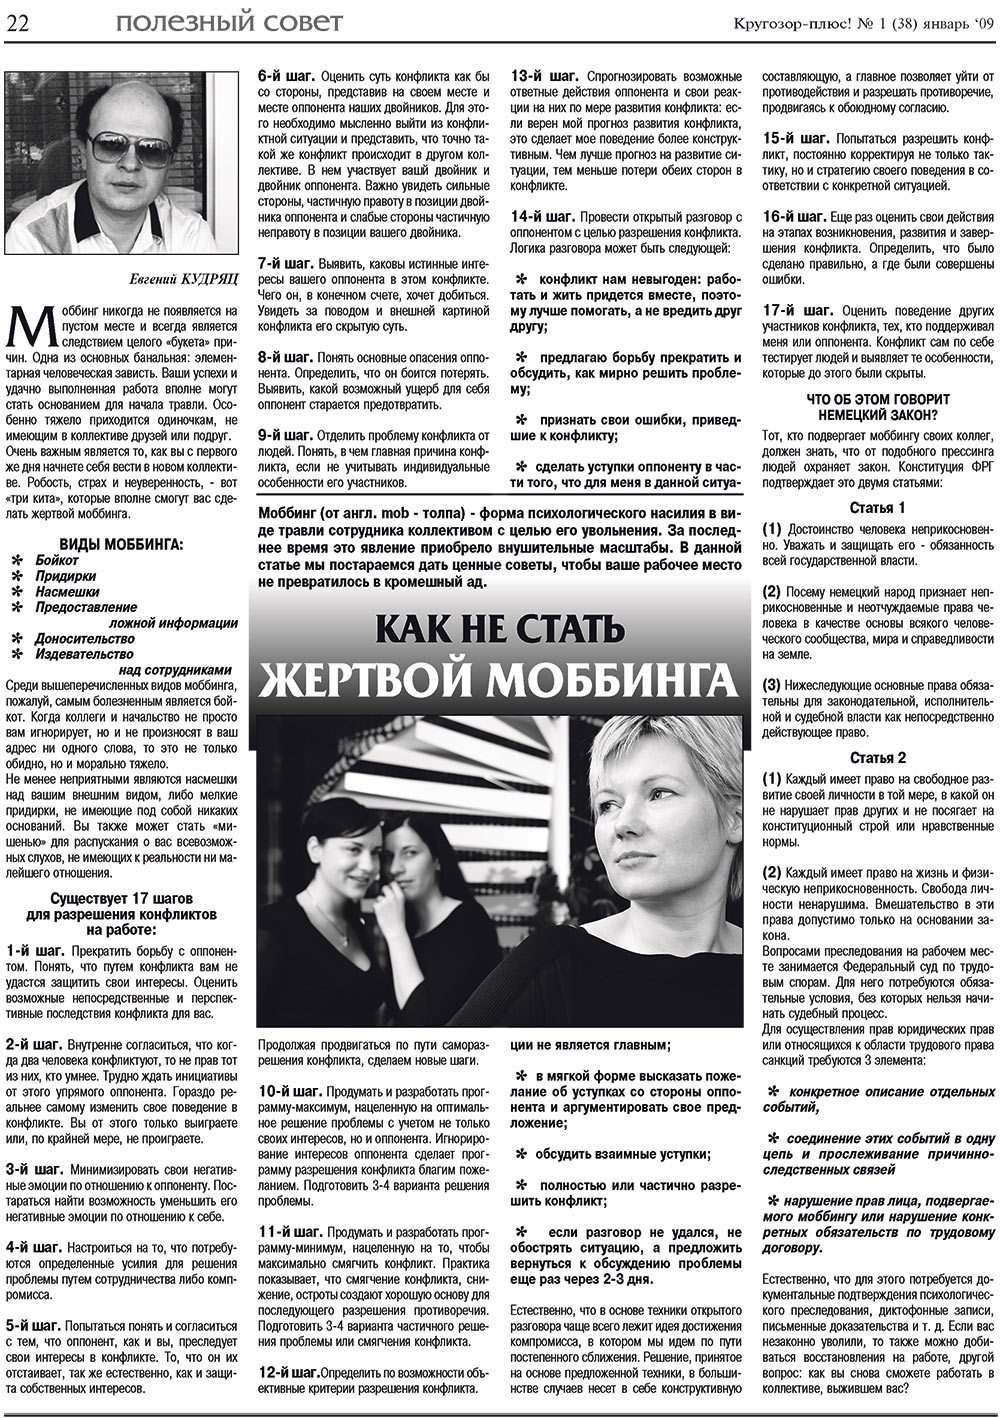 Кругозор плюс!, газета. 2009 №1 стр.22